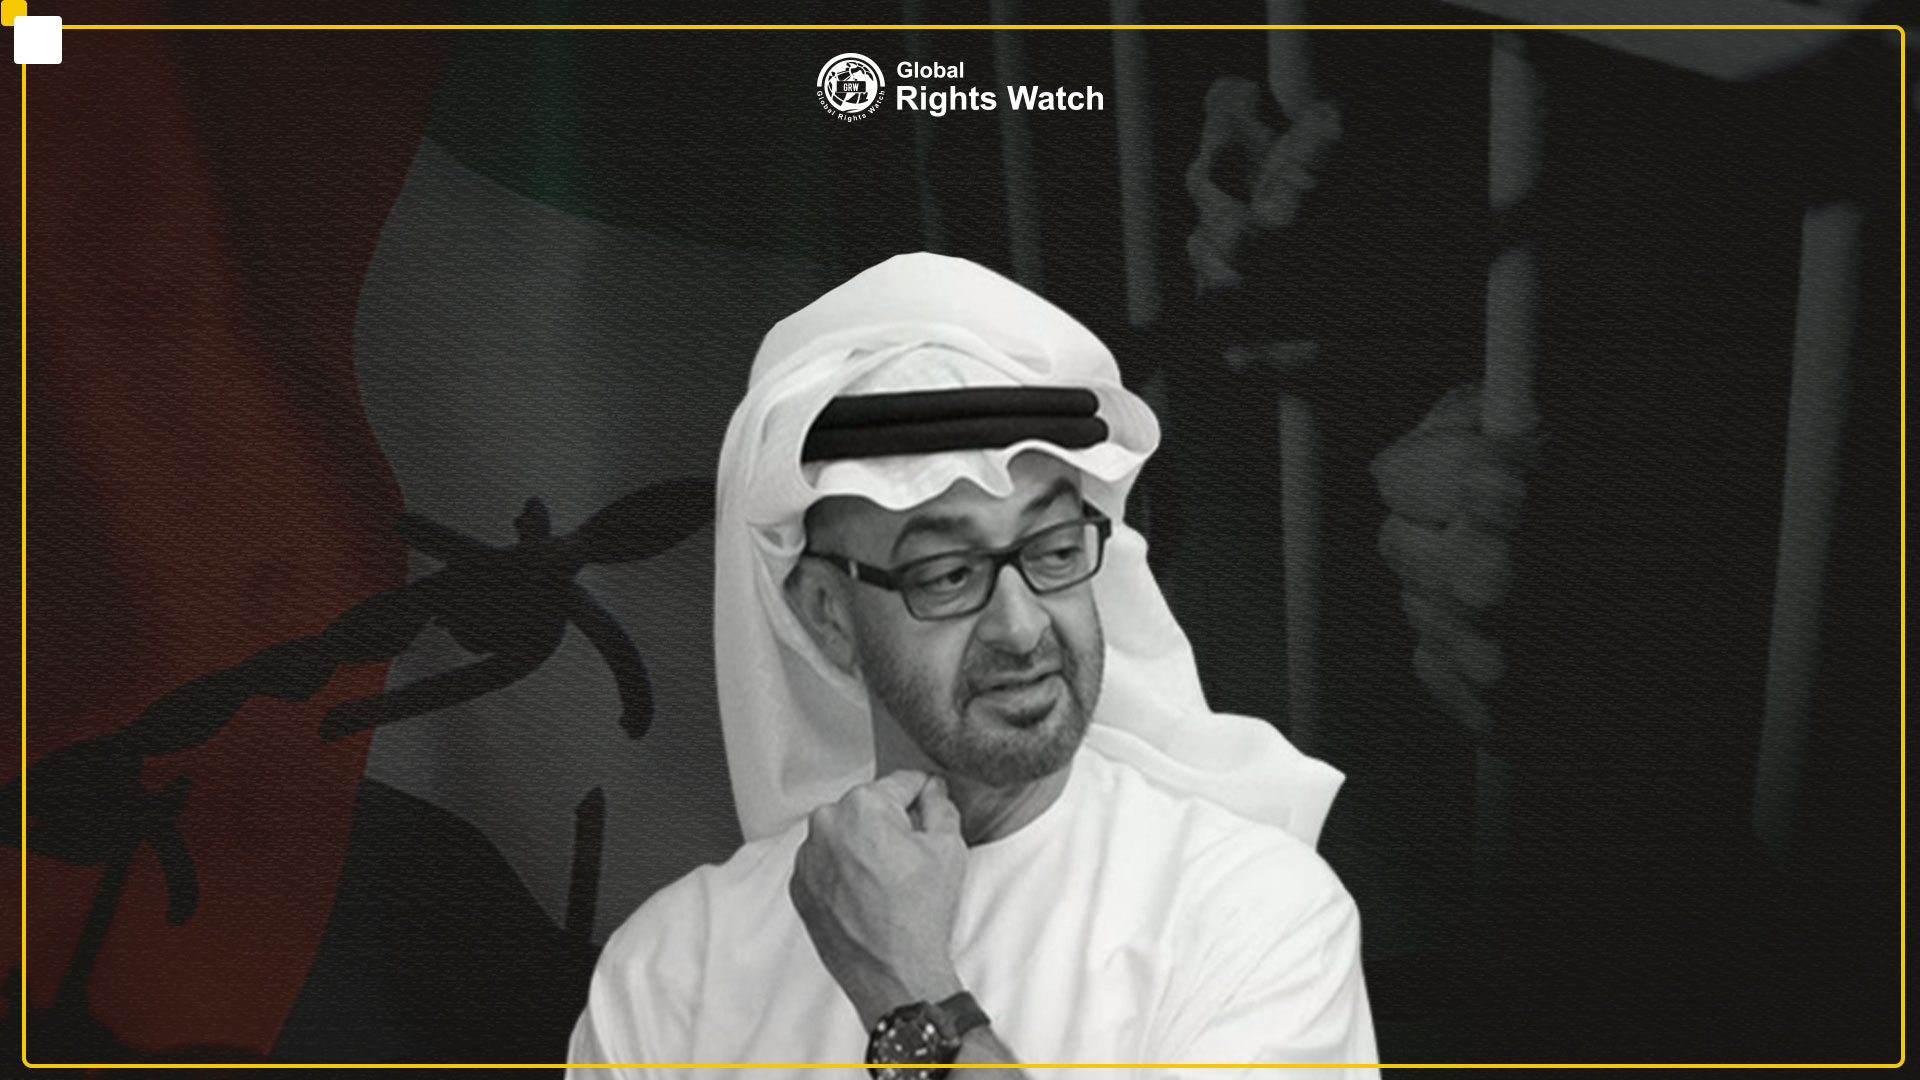 السلطات الإماراتية تجري إصلاحات قانونية تزيد من قمع المواطنين والمقيمين.